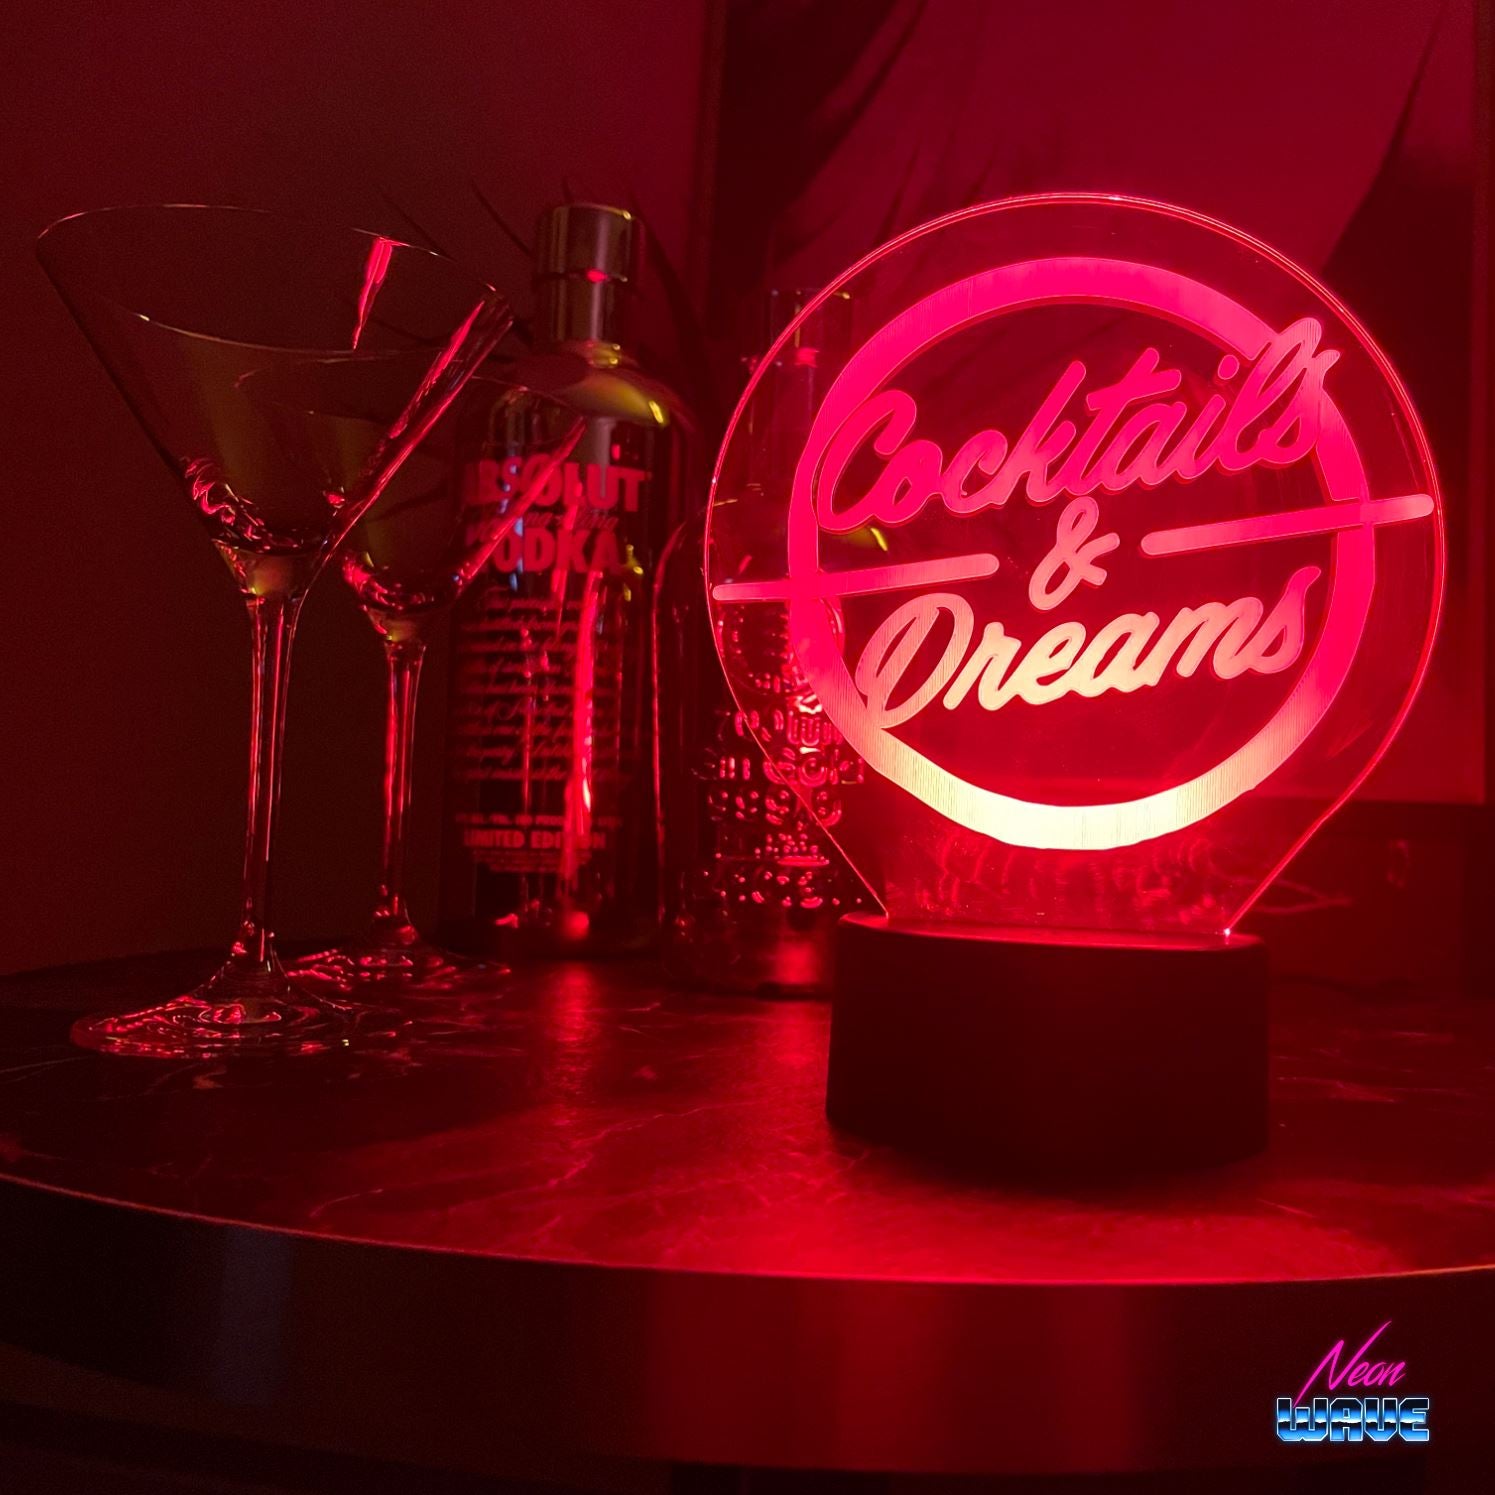 "Cocktail & Dreams" Multicolor Leuchtacrylboard Ambiente Lampen Neonwave.ch 